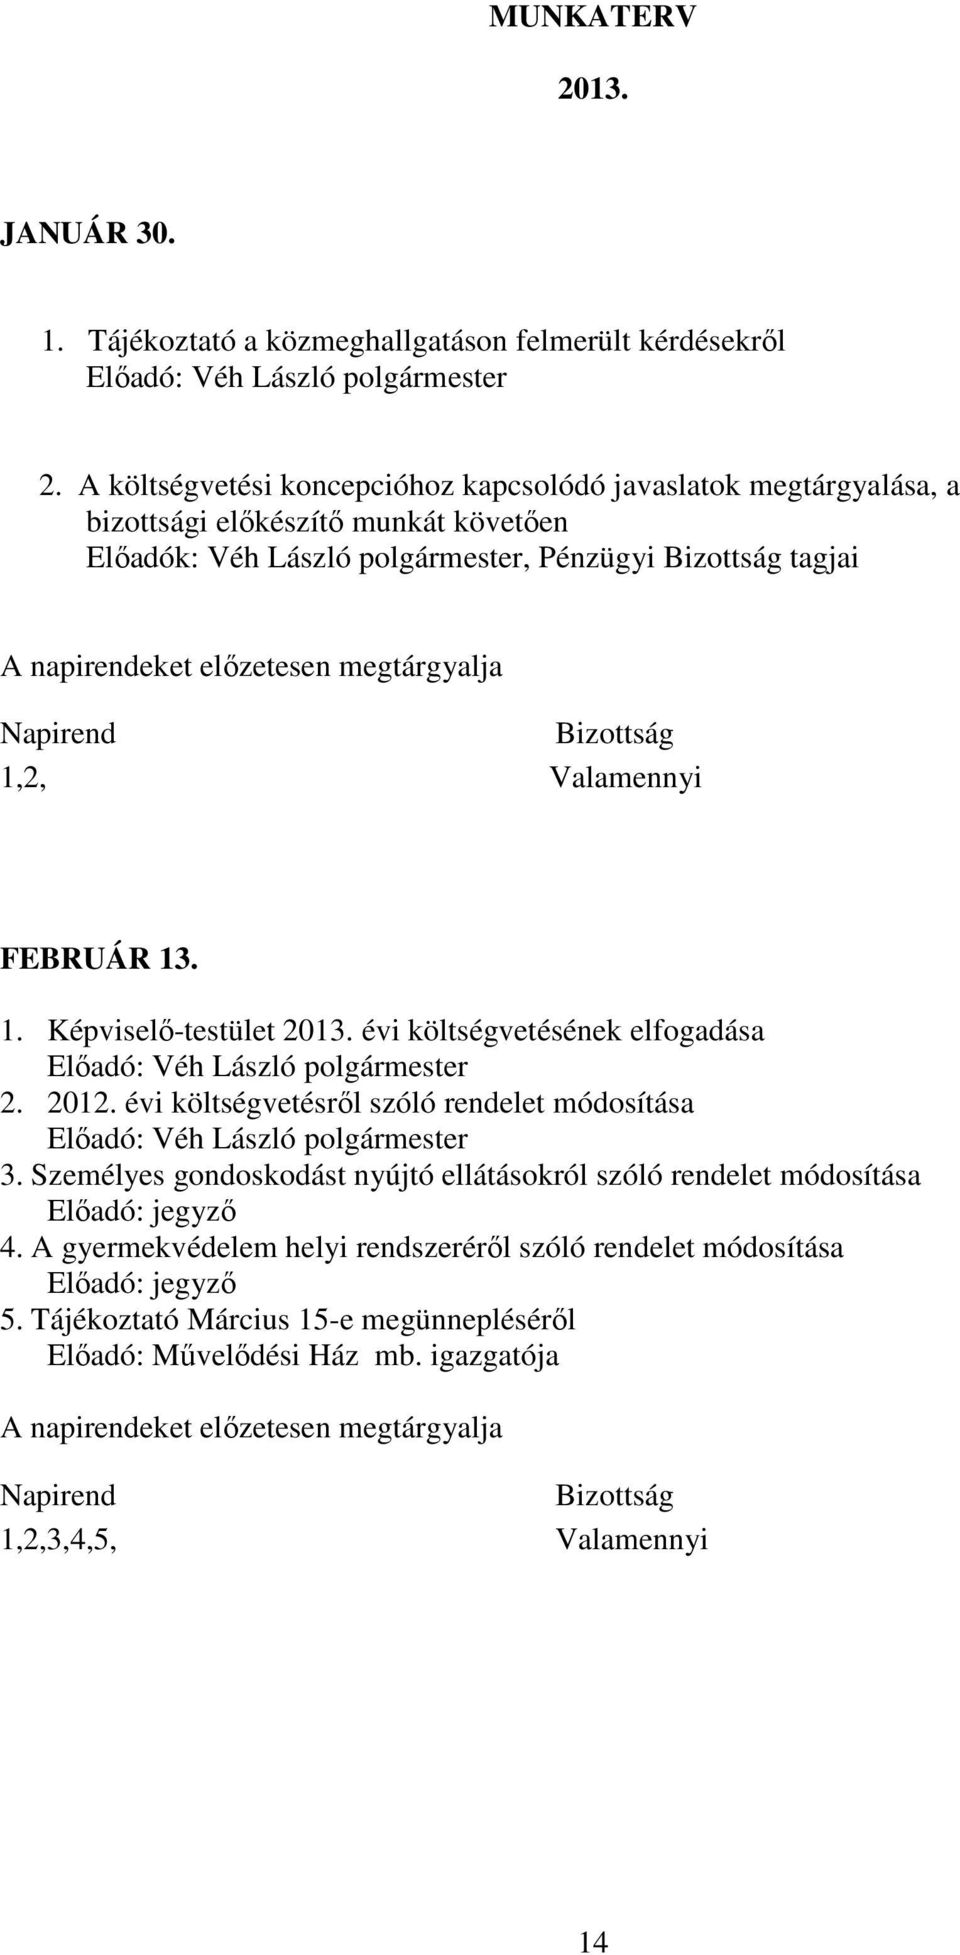 megtárgyalja Napirend Bizottság 1,2, Valamennyi FEBRUÁR 13. 1. Képviselő-testület 2013. évi költségvetésének elfogadása 2. 2012. évi költségvetésről szóló rendelet módosítása 3.